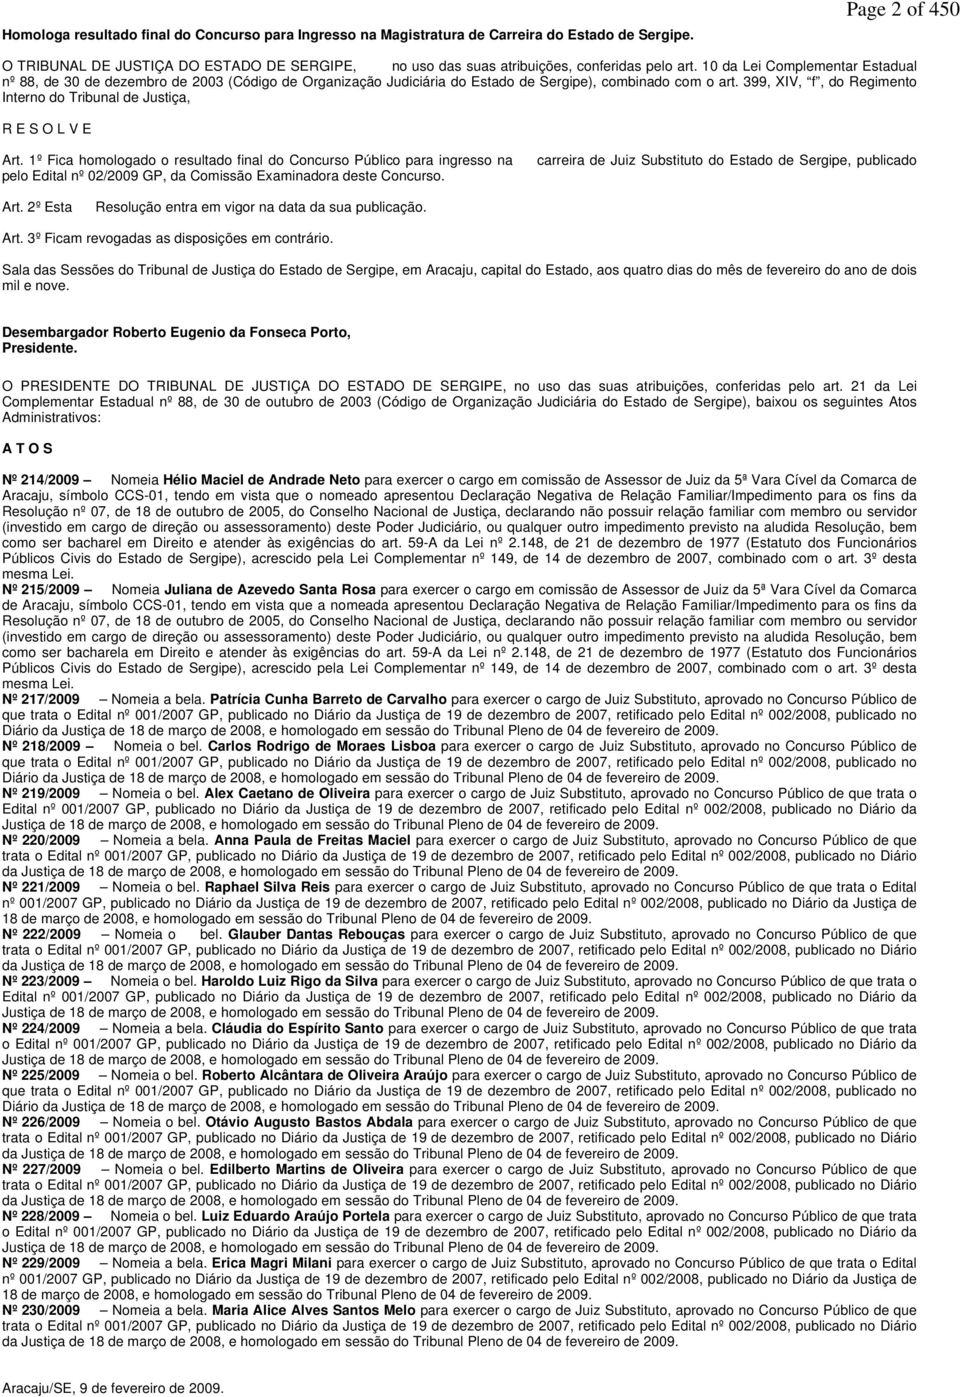 10 da Lei Complementar Estadual nº 88, de 30 de dezembro de 2003 (Código de Organização Judiciária do Estado de Sergipe), combinado com o art.